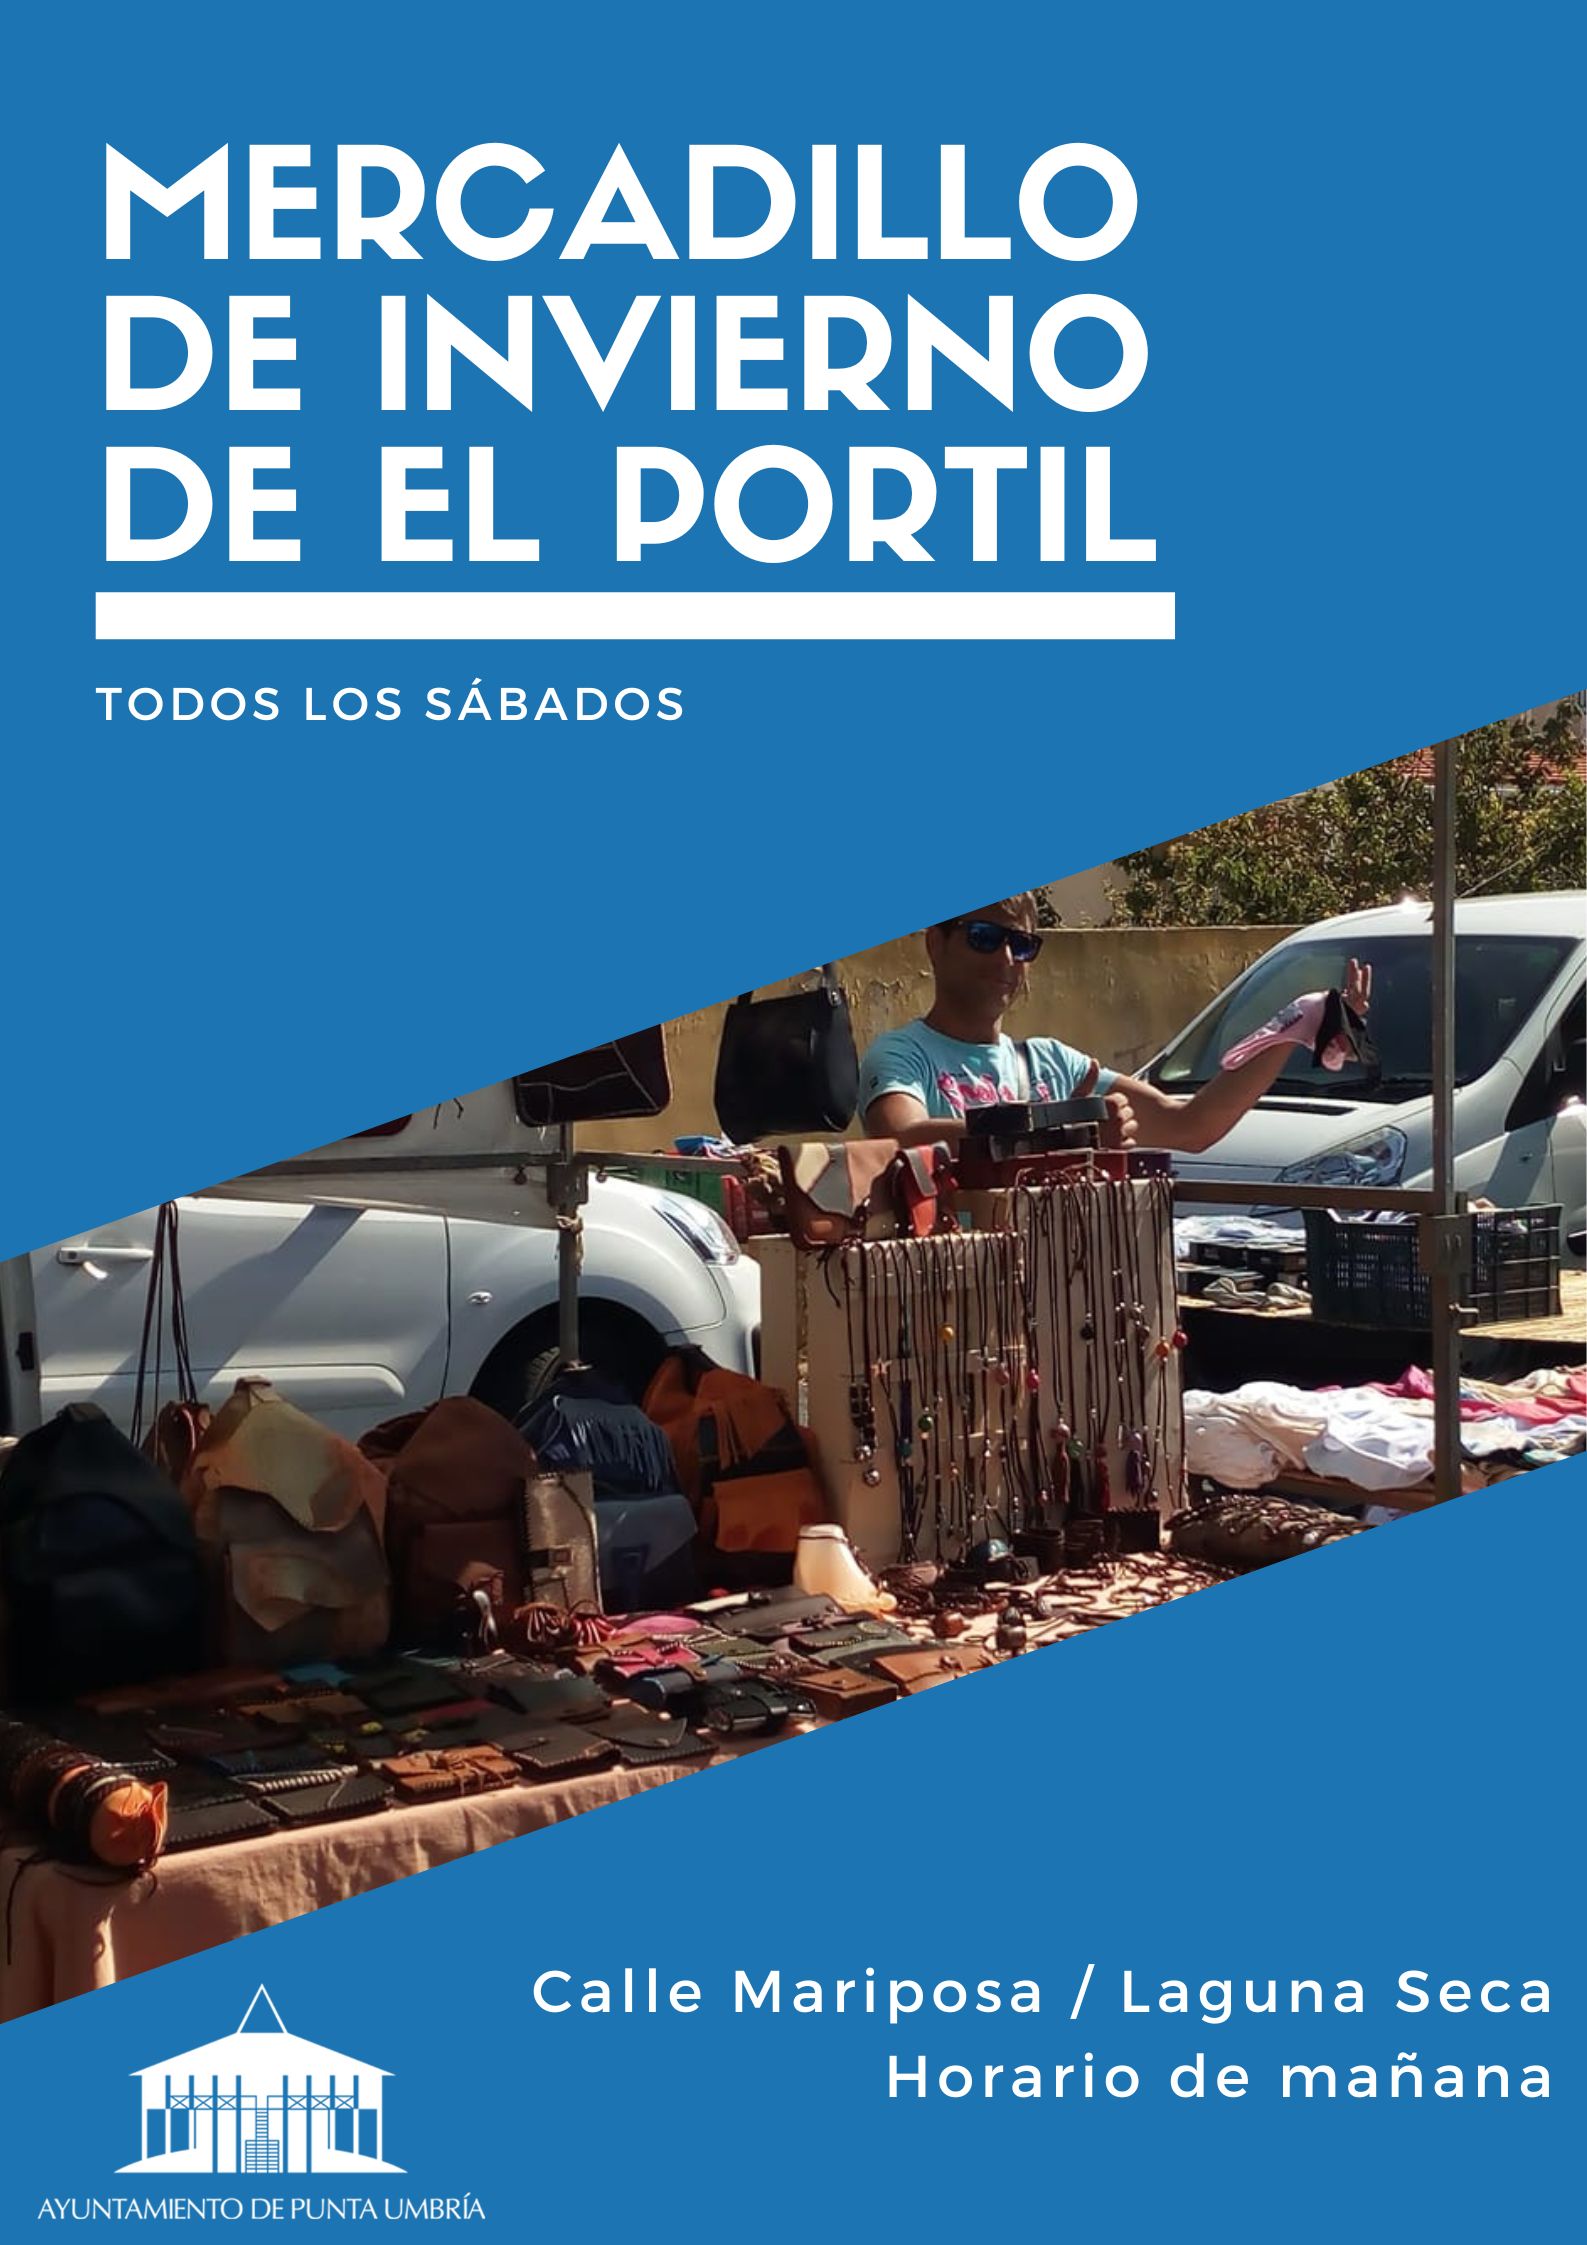 El Ayuntamiento de Punta Umbría reactiva el mercadillo de invierno de El Portil a partir de este sábado